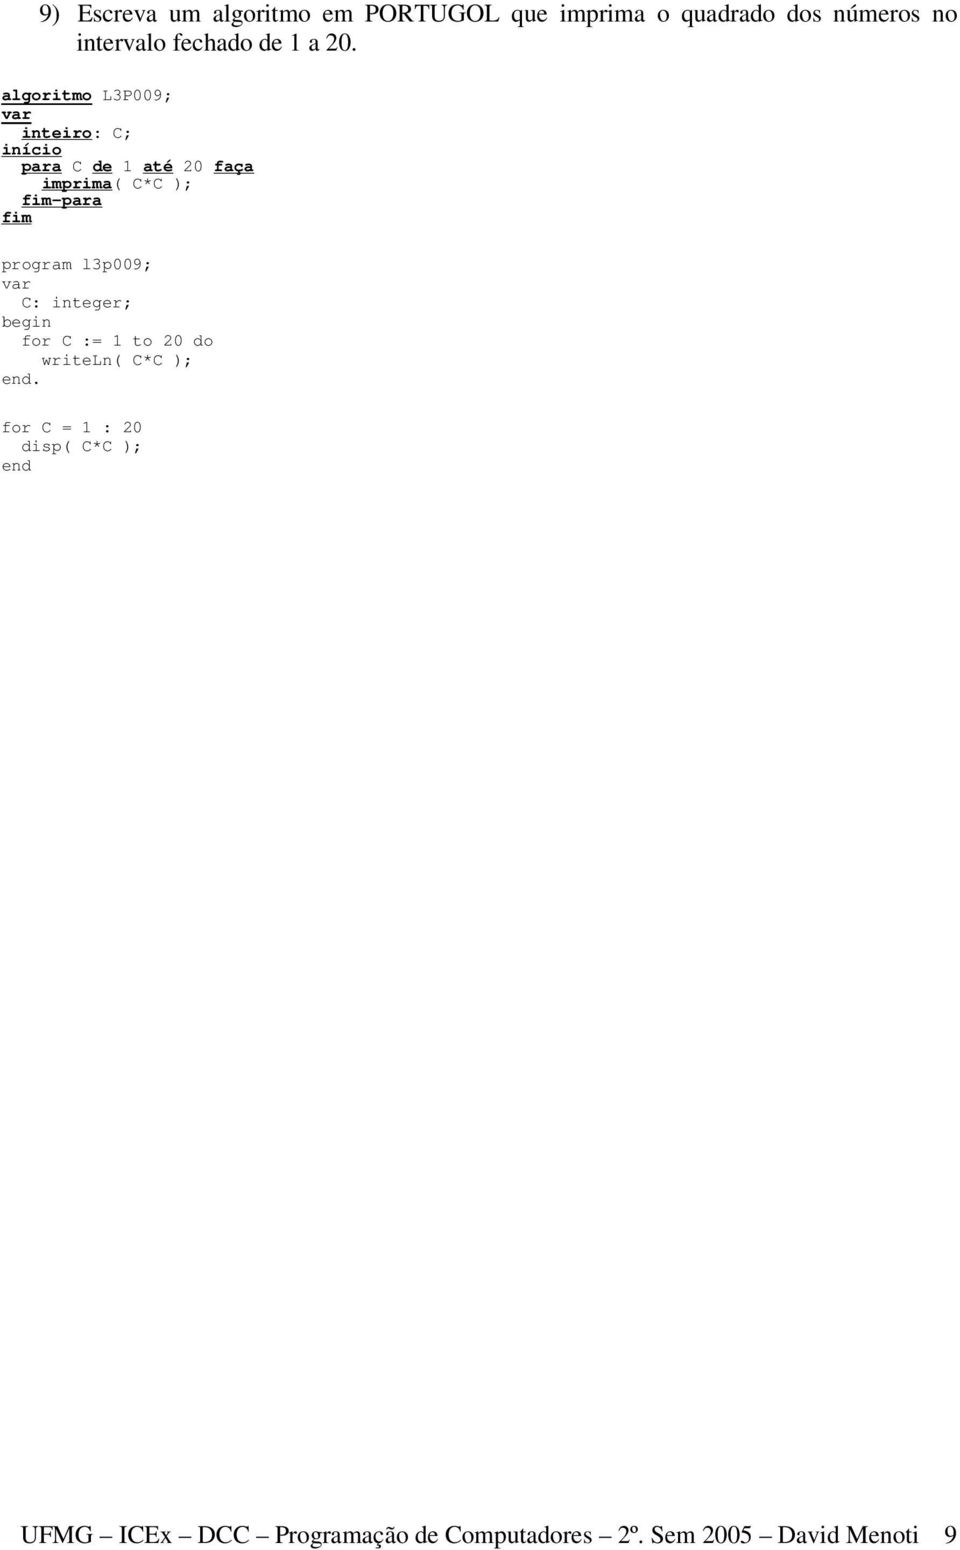 algoritmo L3P009; inteiro: C; para C de 1 até 20 faça imprima( C*C ); program